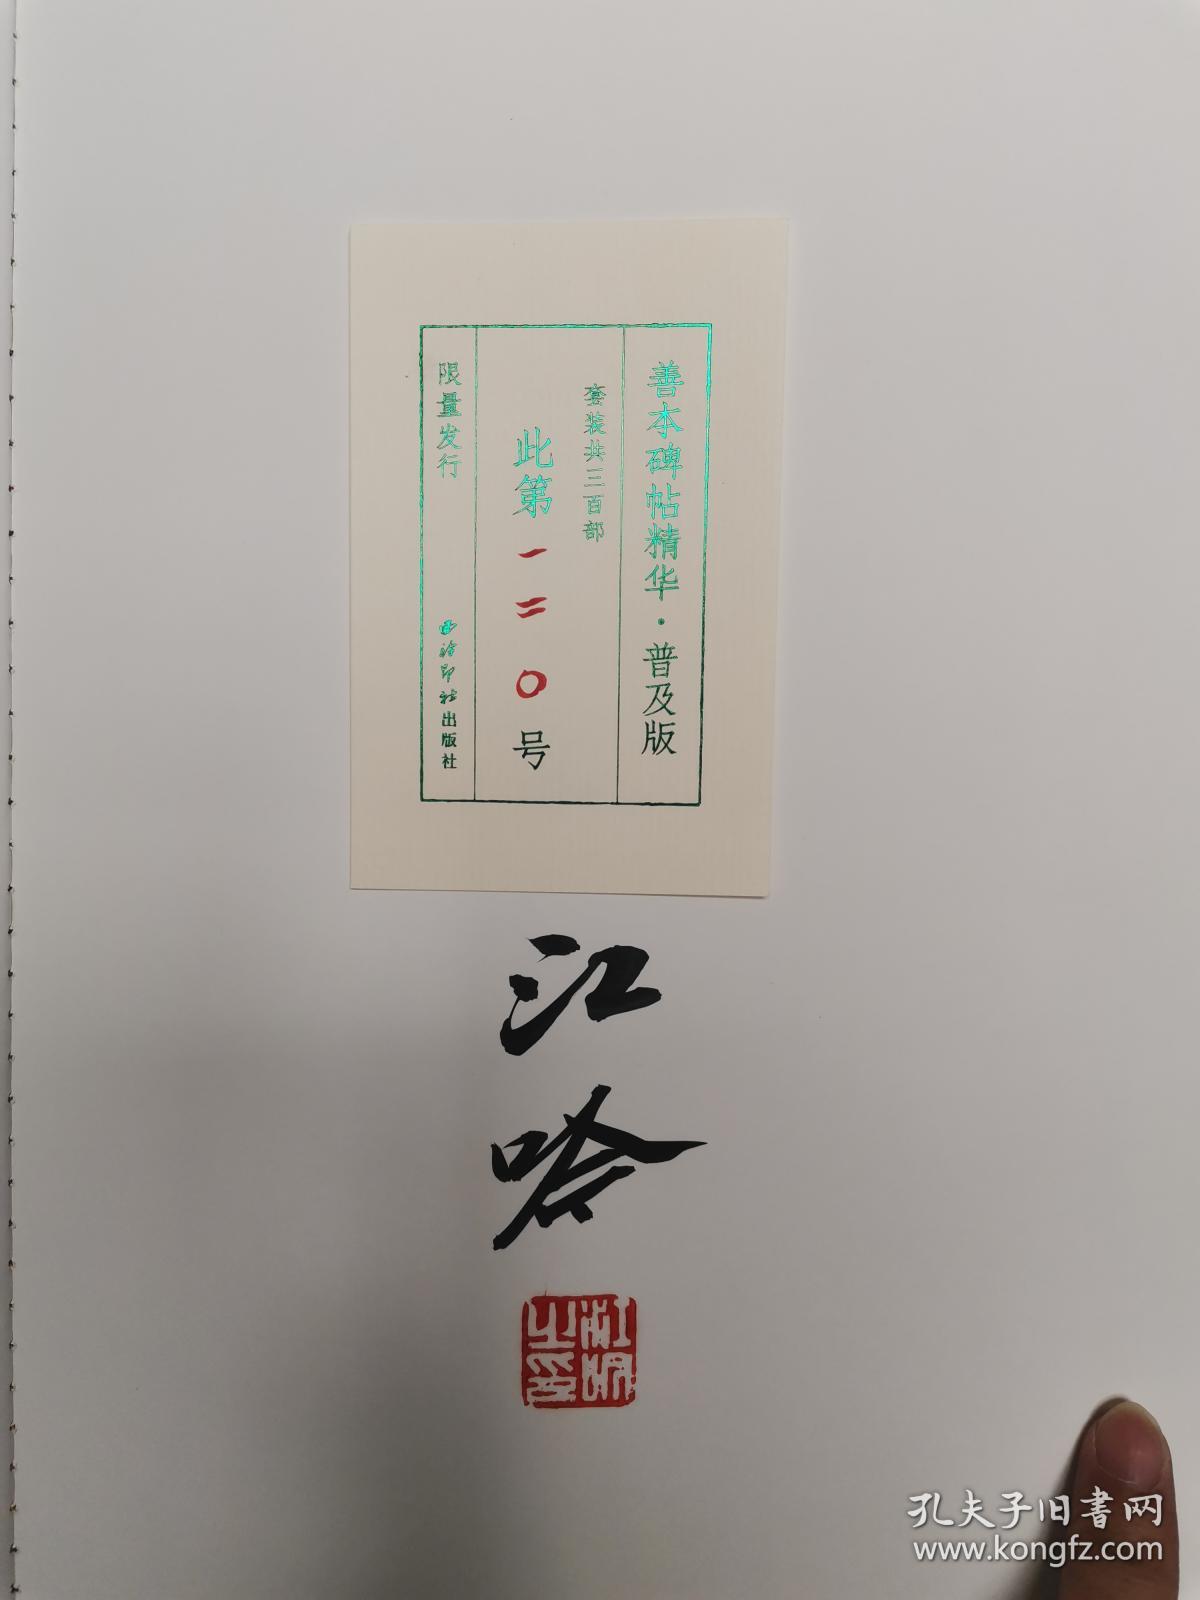 善本碑帖精华•普及版 第一辑 江吟先生签名钤印 第120号 含习字卡